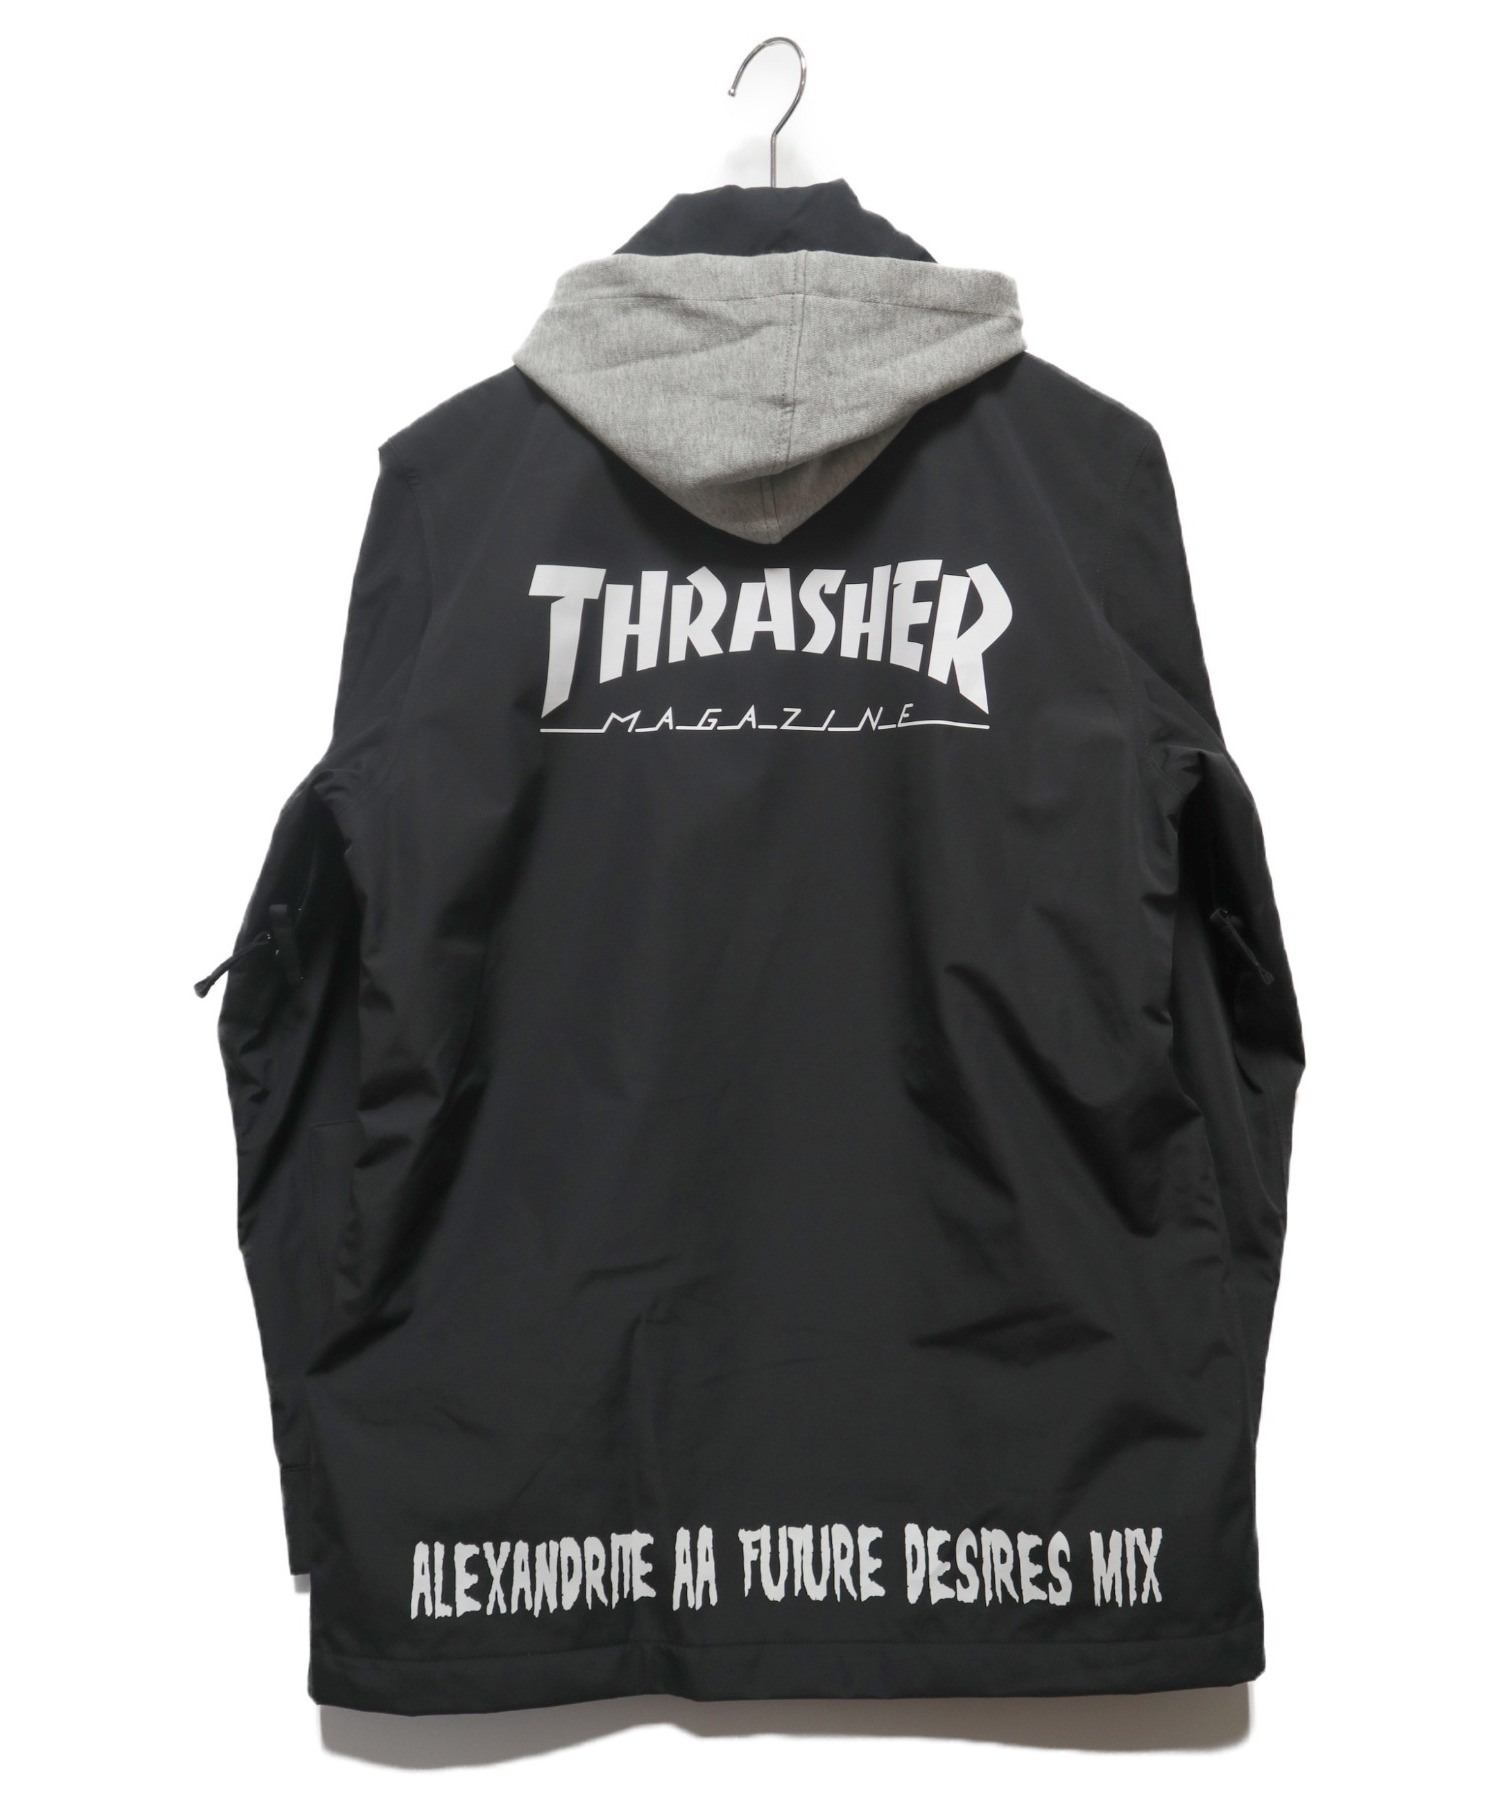 THRASHER×AA HARDWEAR (スラッシャー×ダブルエーハードウェア) フード付コーチジャケット ブラック×グレー サイズ:M